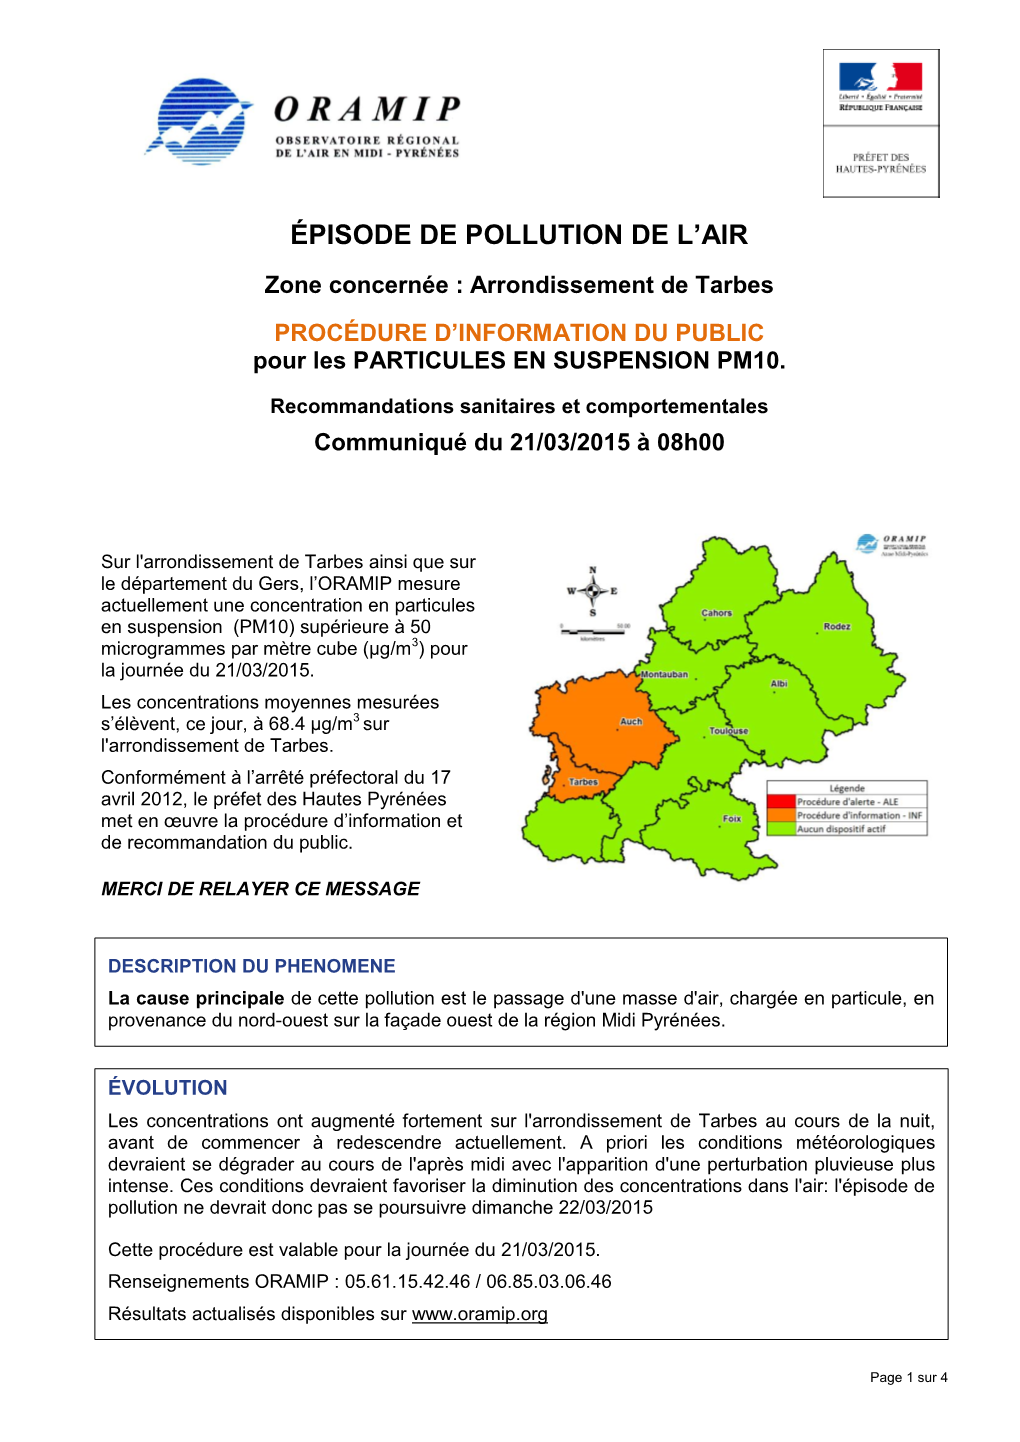 Liste Des Communes Concernées Par Cet Évènement De Pollution De L’Air